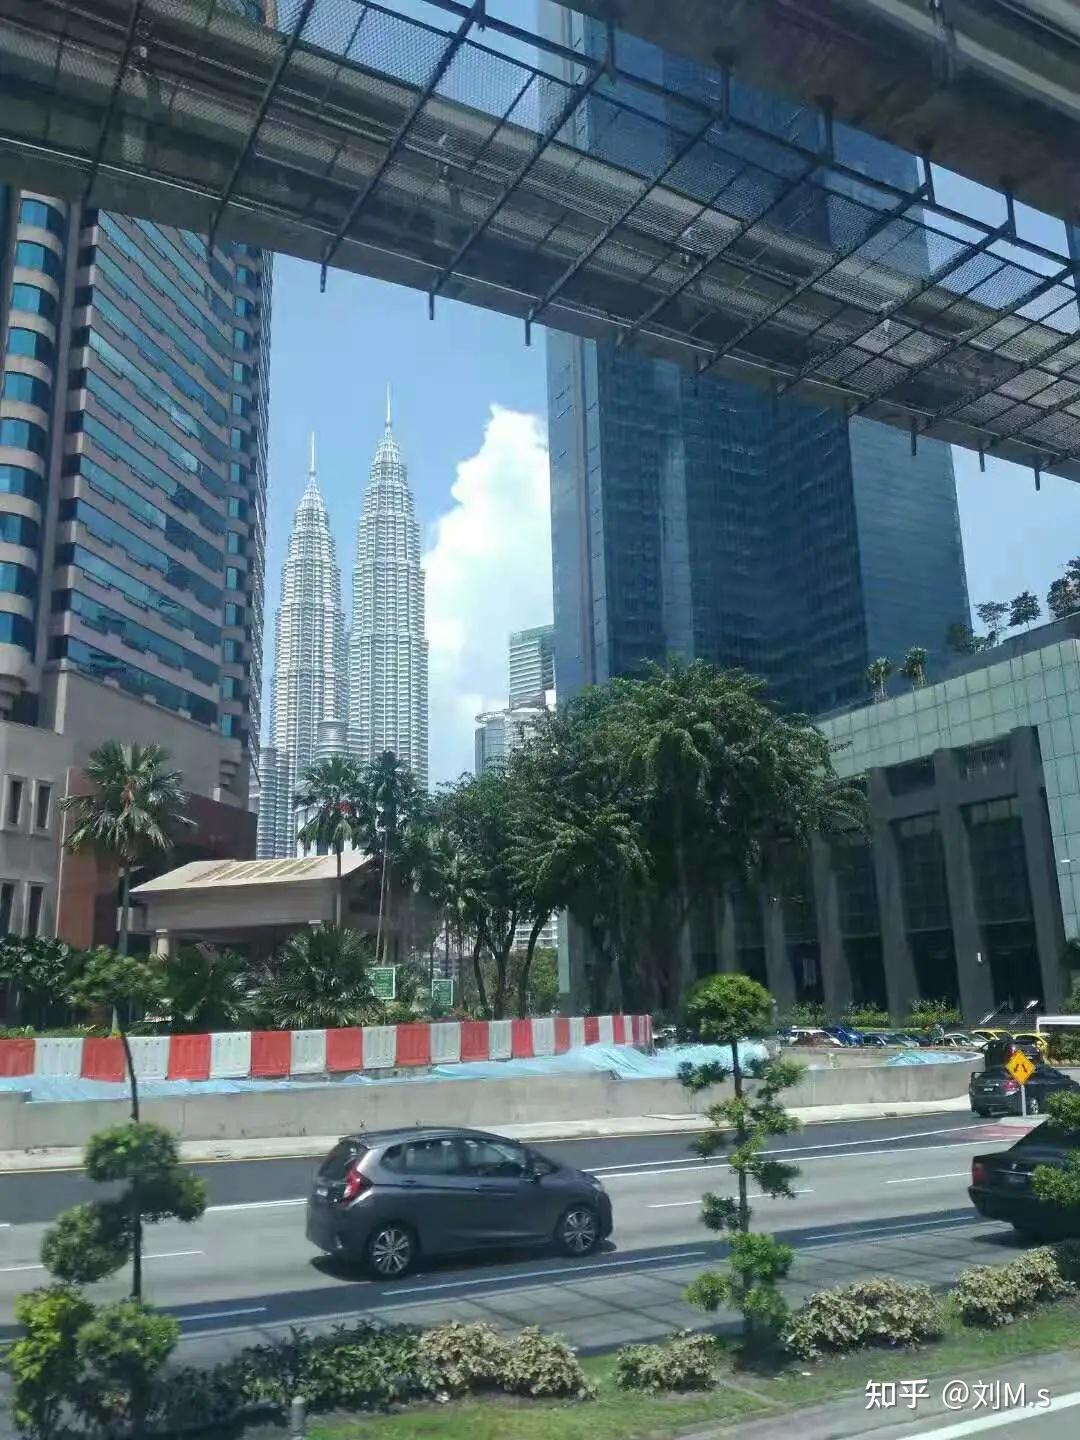 马来西亚行五吉隆坡电讯塔上世界高塔榜与双峰塔相映成辉